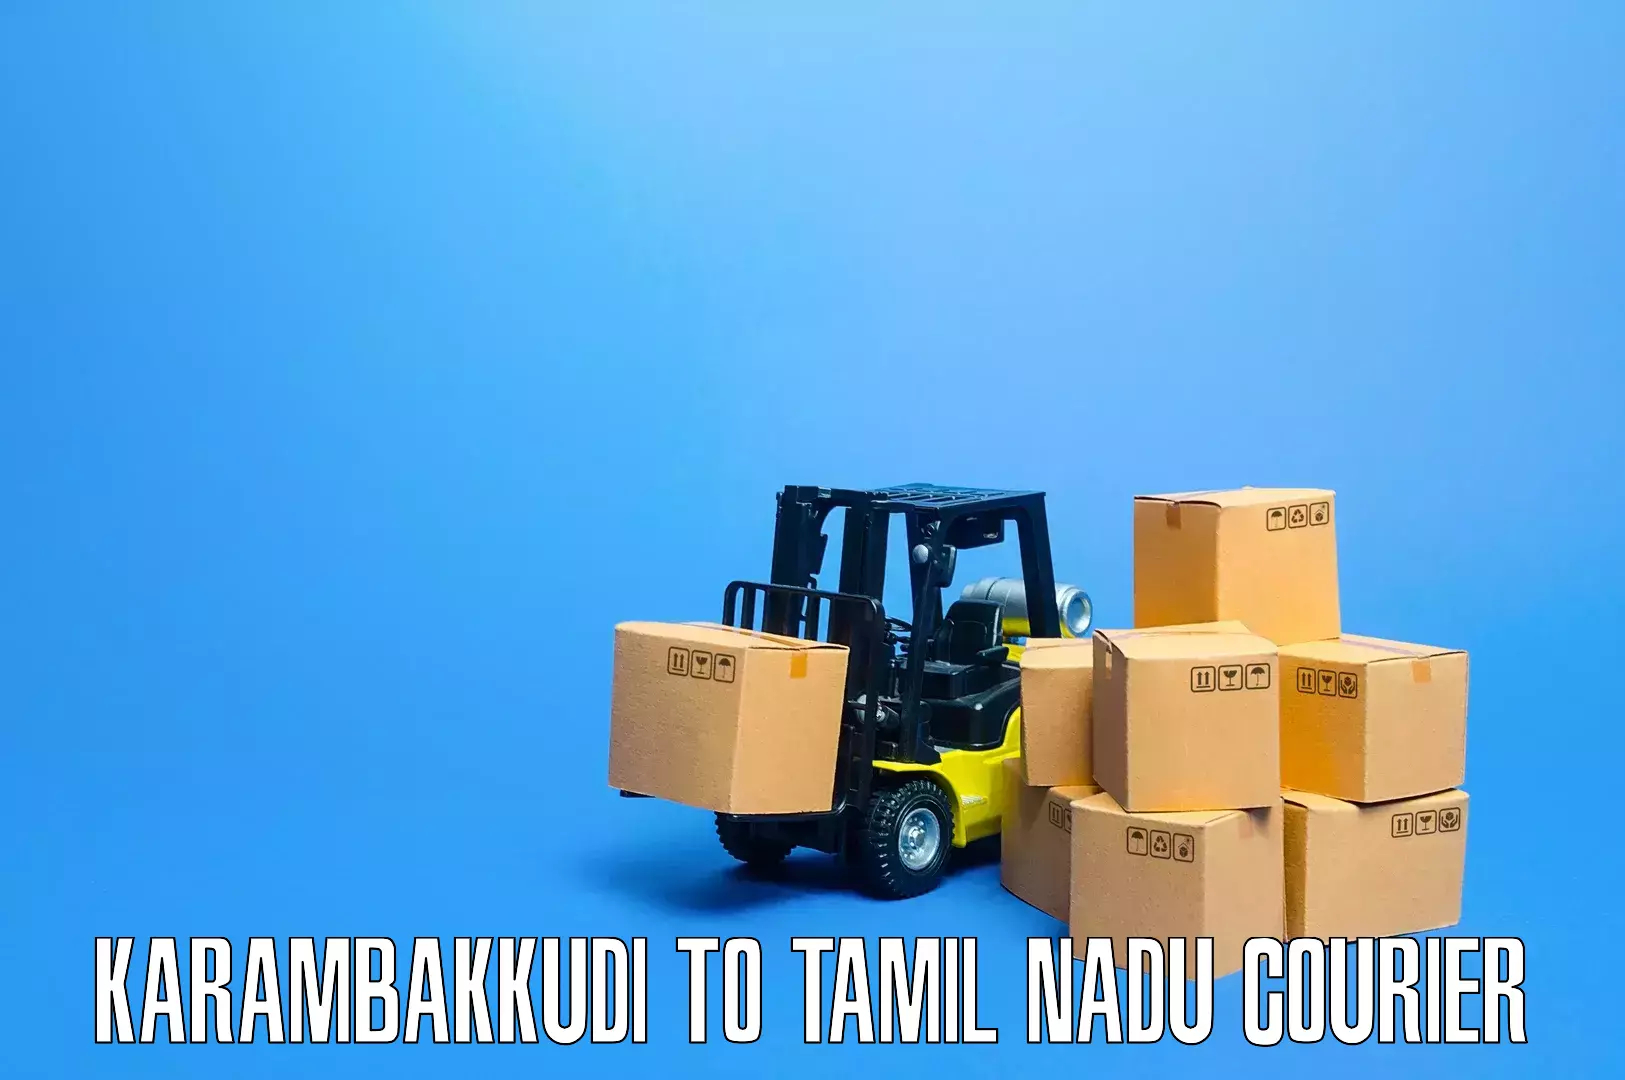 Professional moving company Karambakkudi to Tiruvannamalai